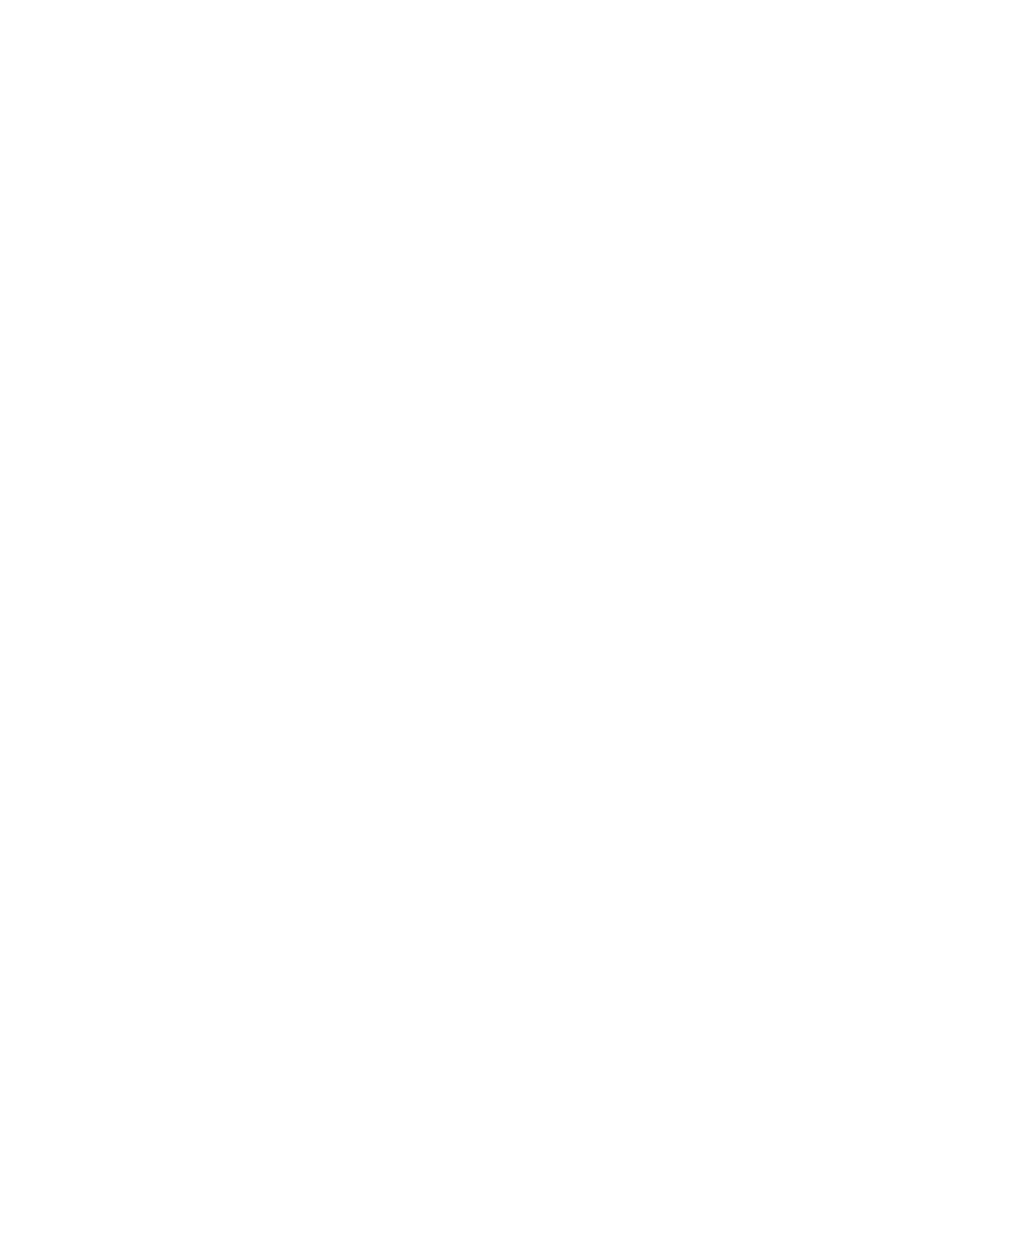 Moon, 66 Questions logo